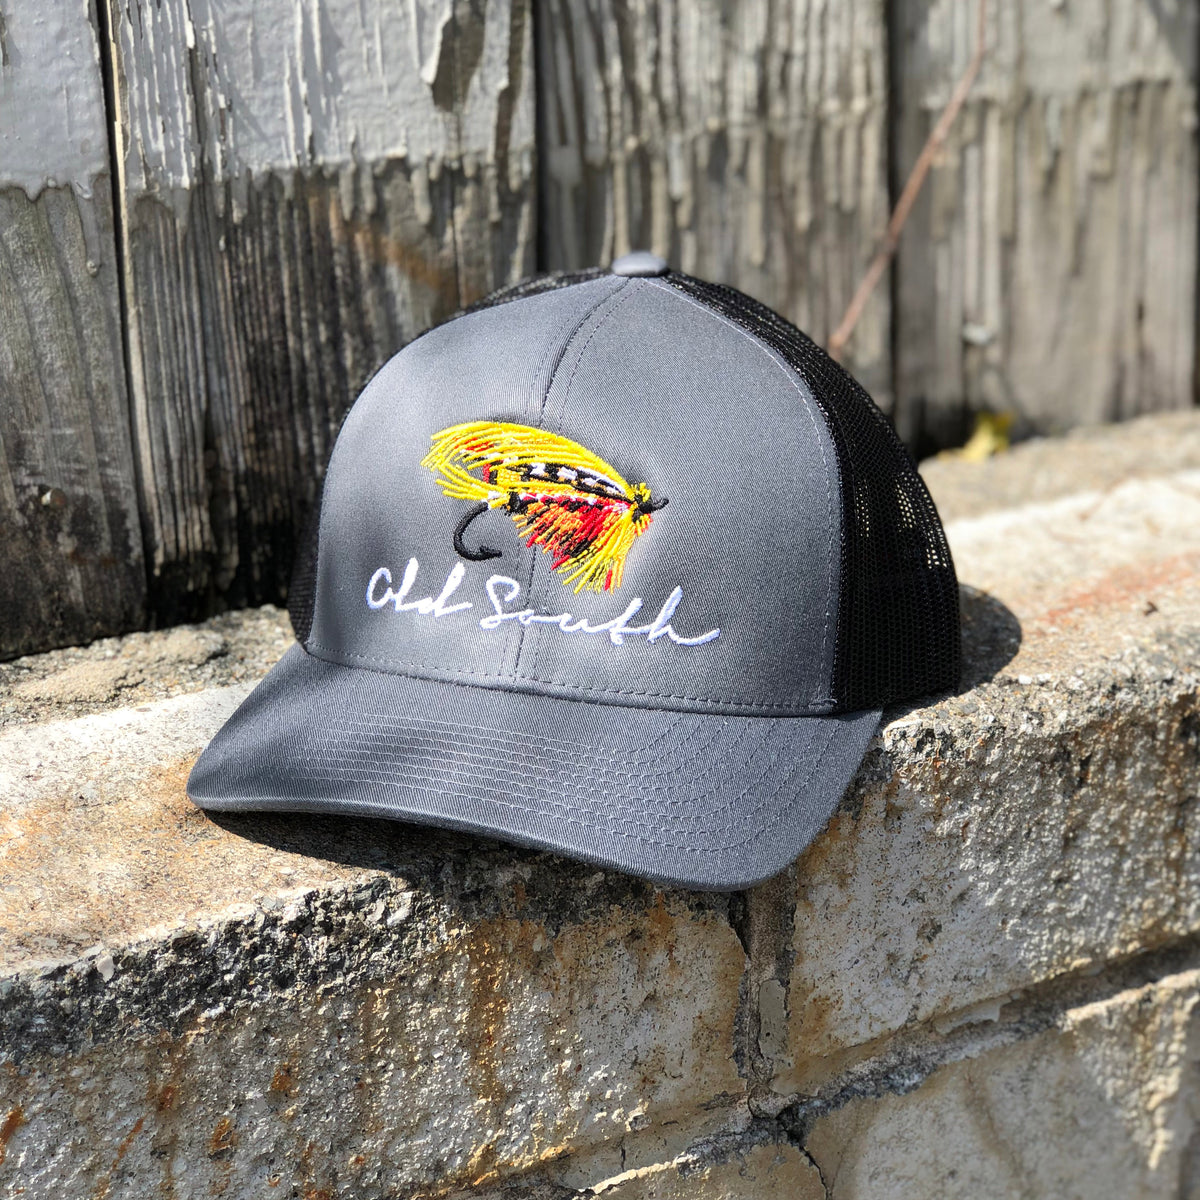 Fly Fishing Trucker Hat